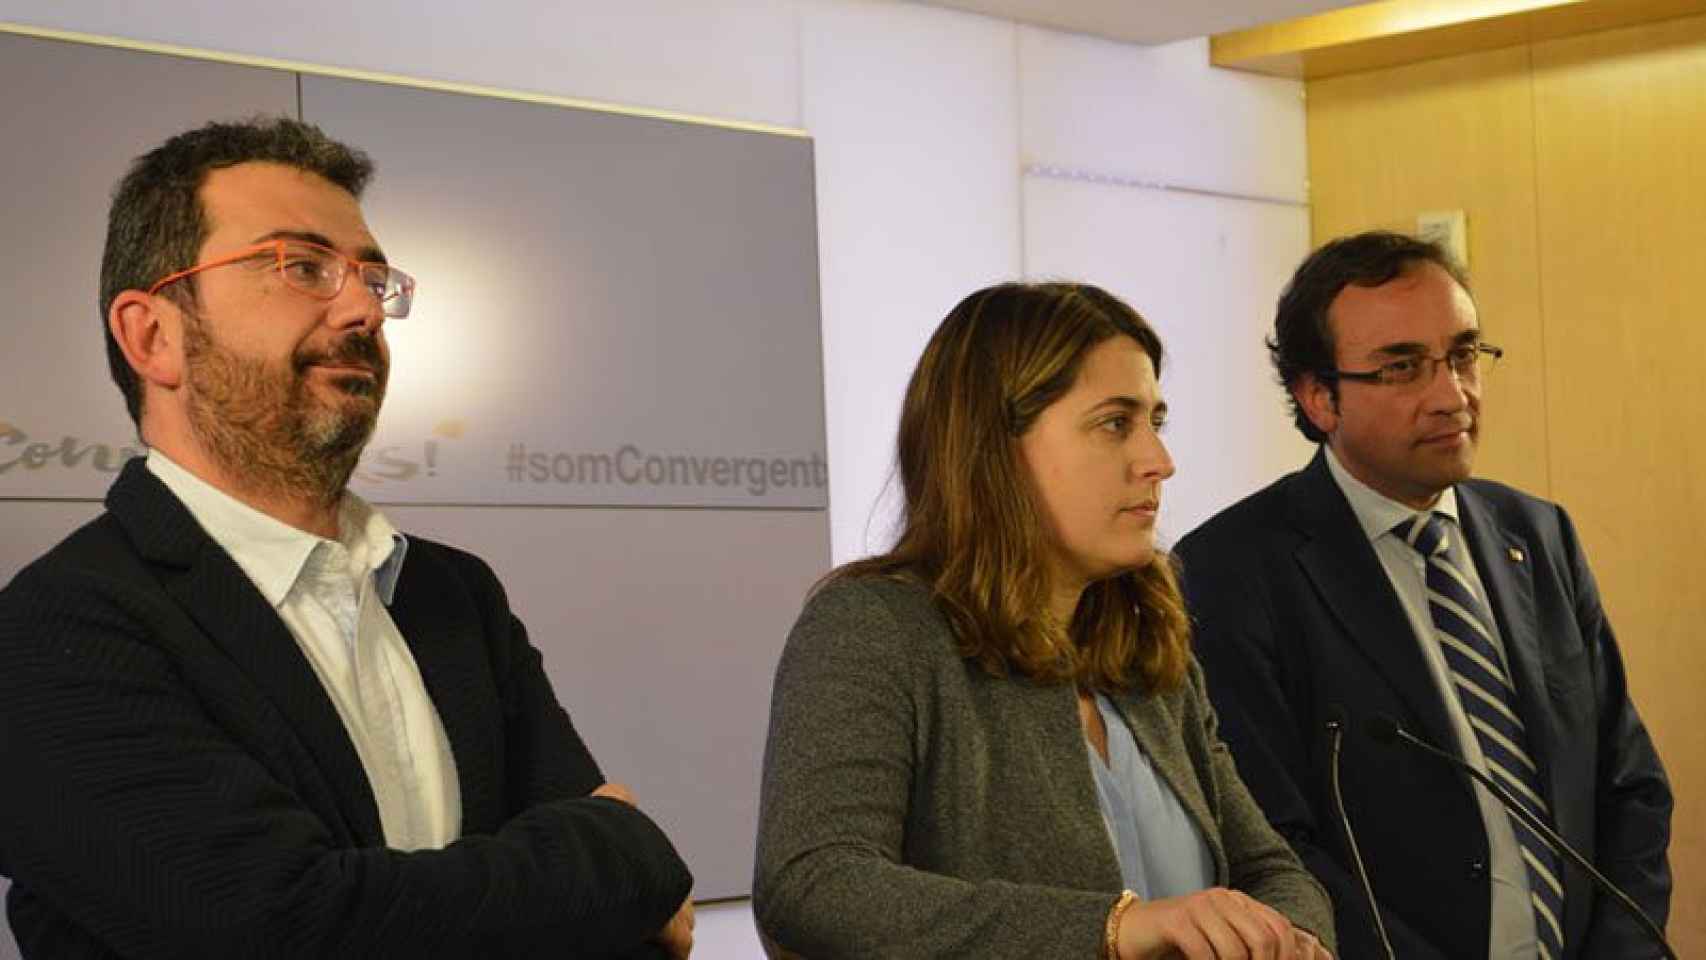 Francesc Sánchez, Marta Pascal y Josep Rull, de izquierda a derecha, en la sede de Convergència.